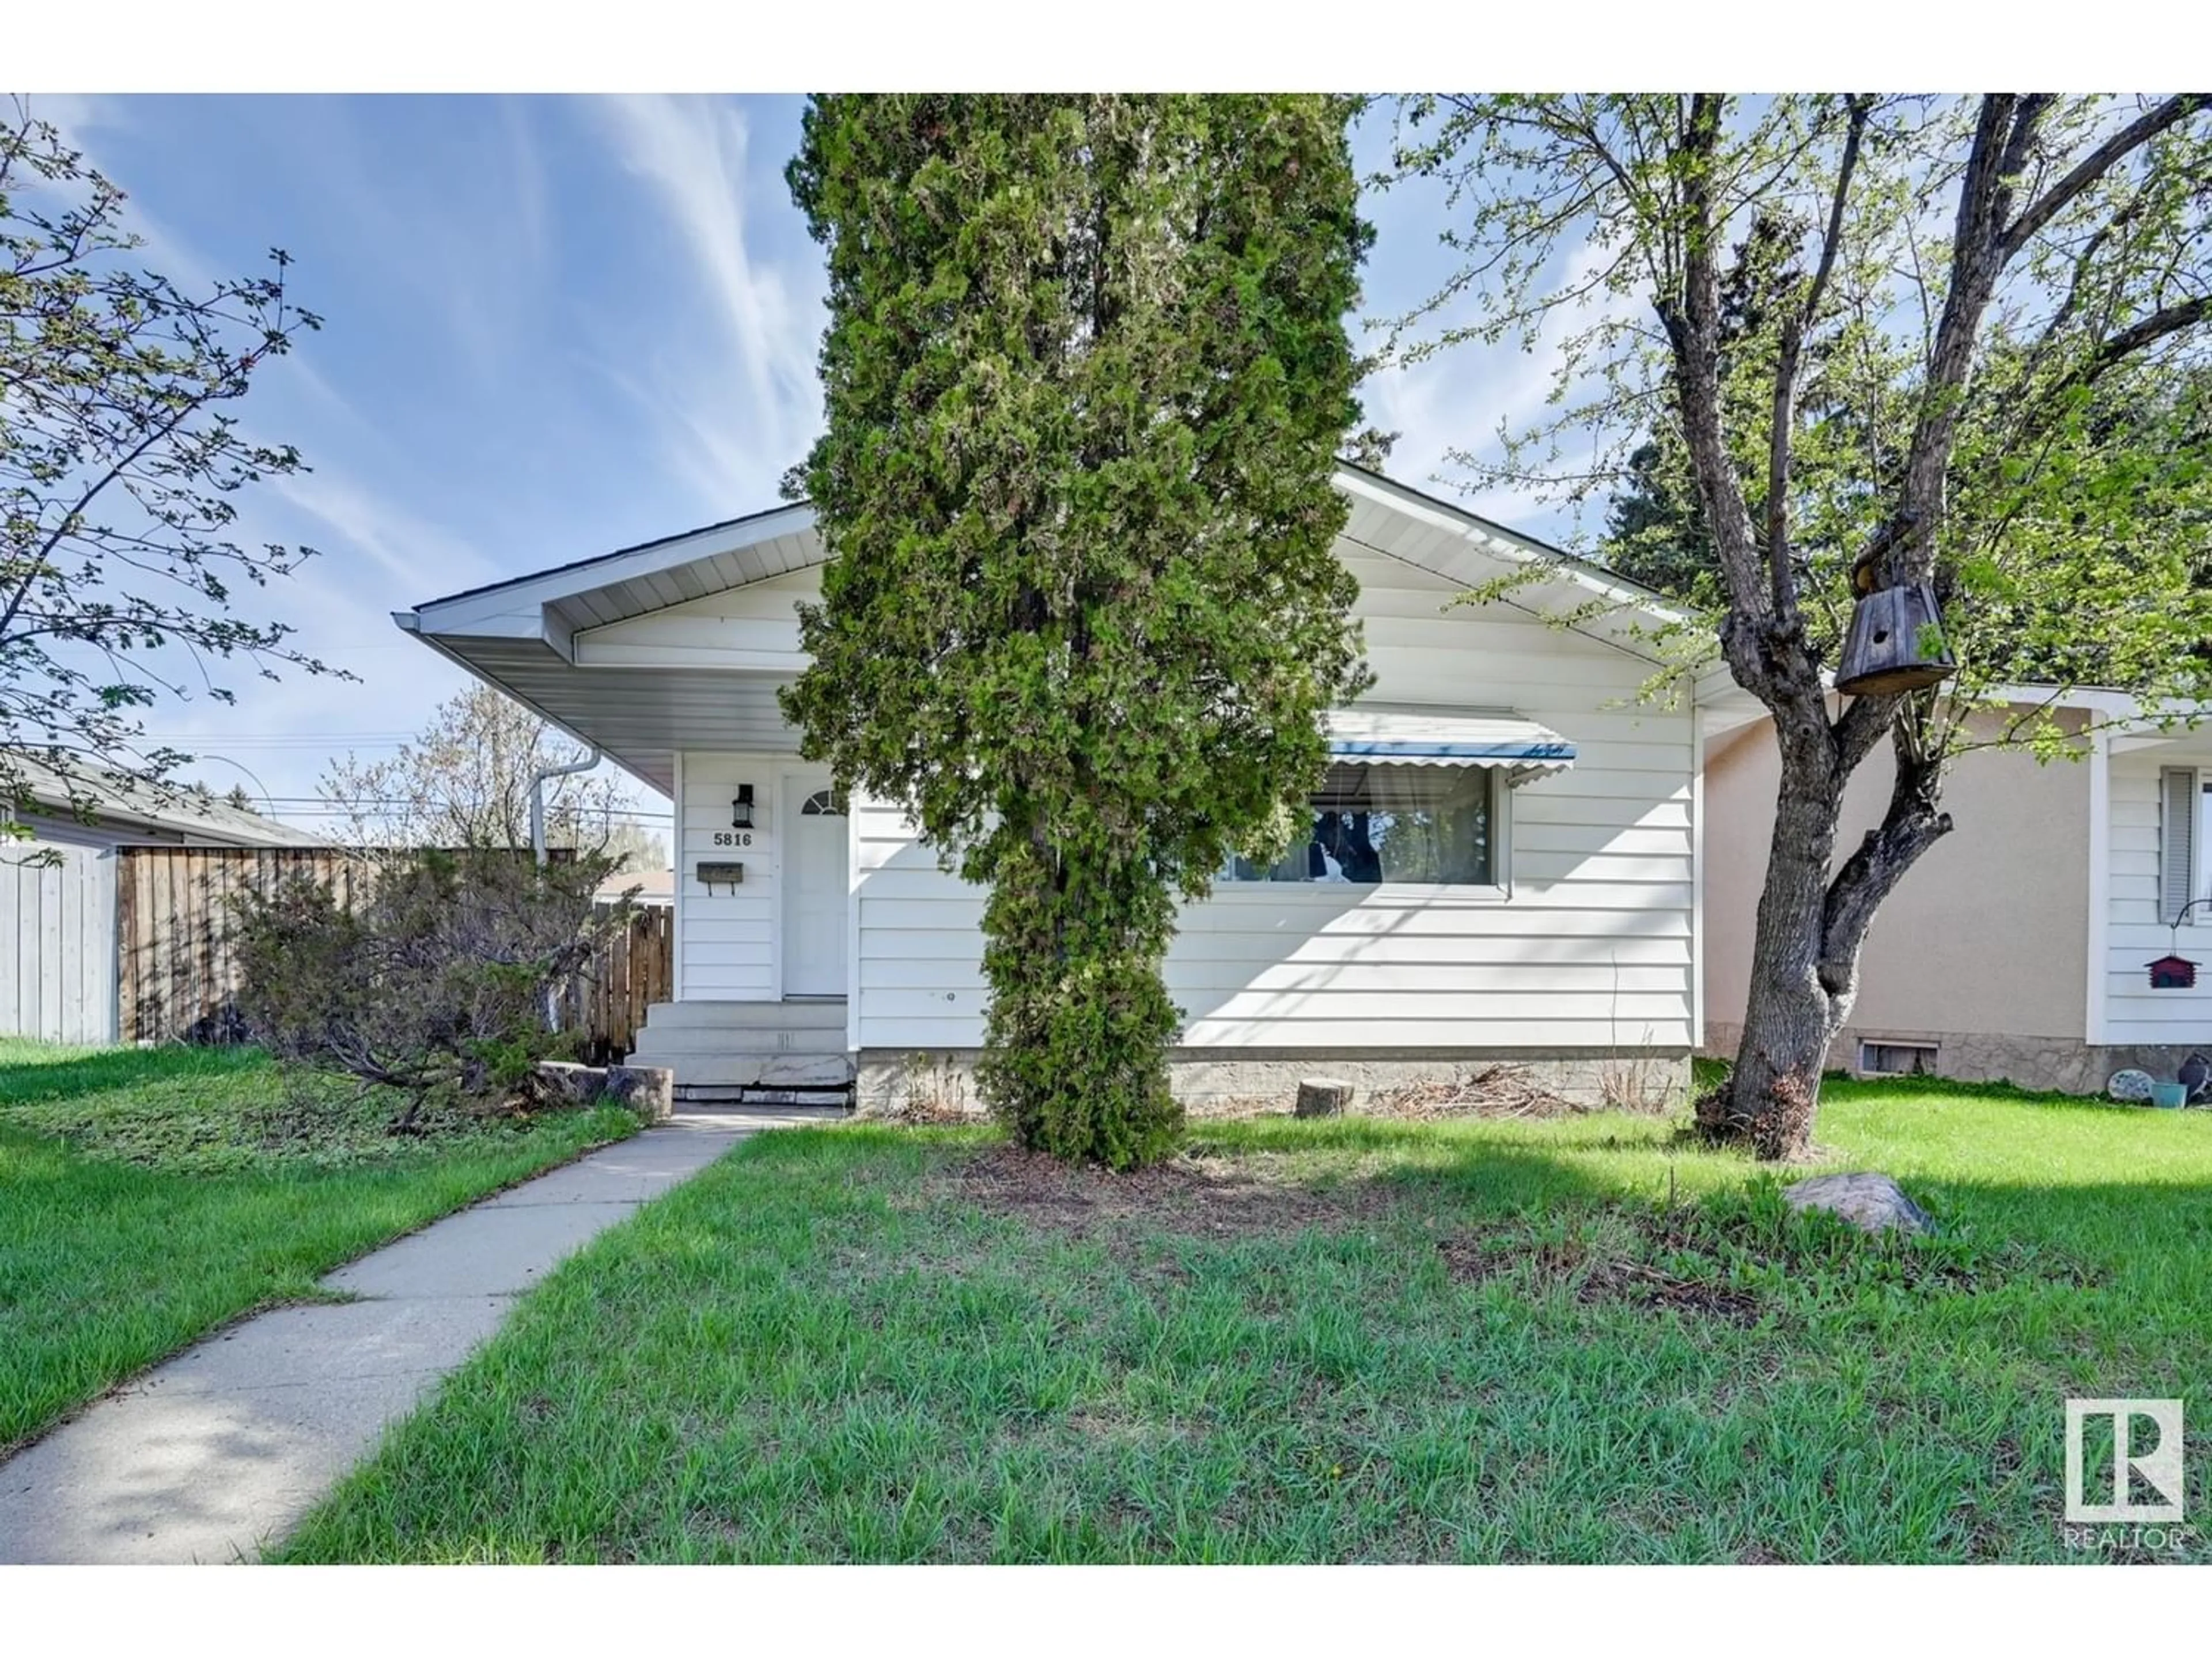 Frontside or backside of a home for 5816 140 AV NW, Edmonton Alberta T5A1G5